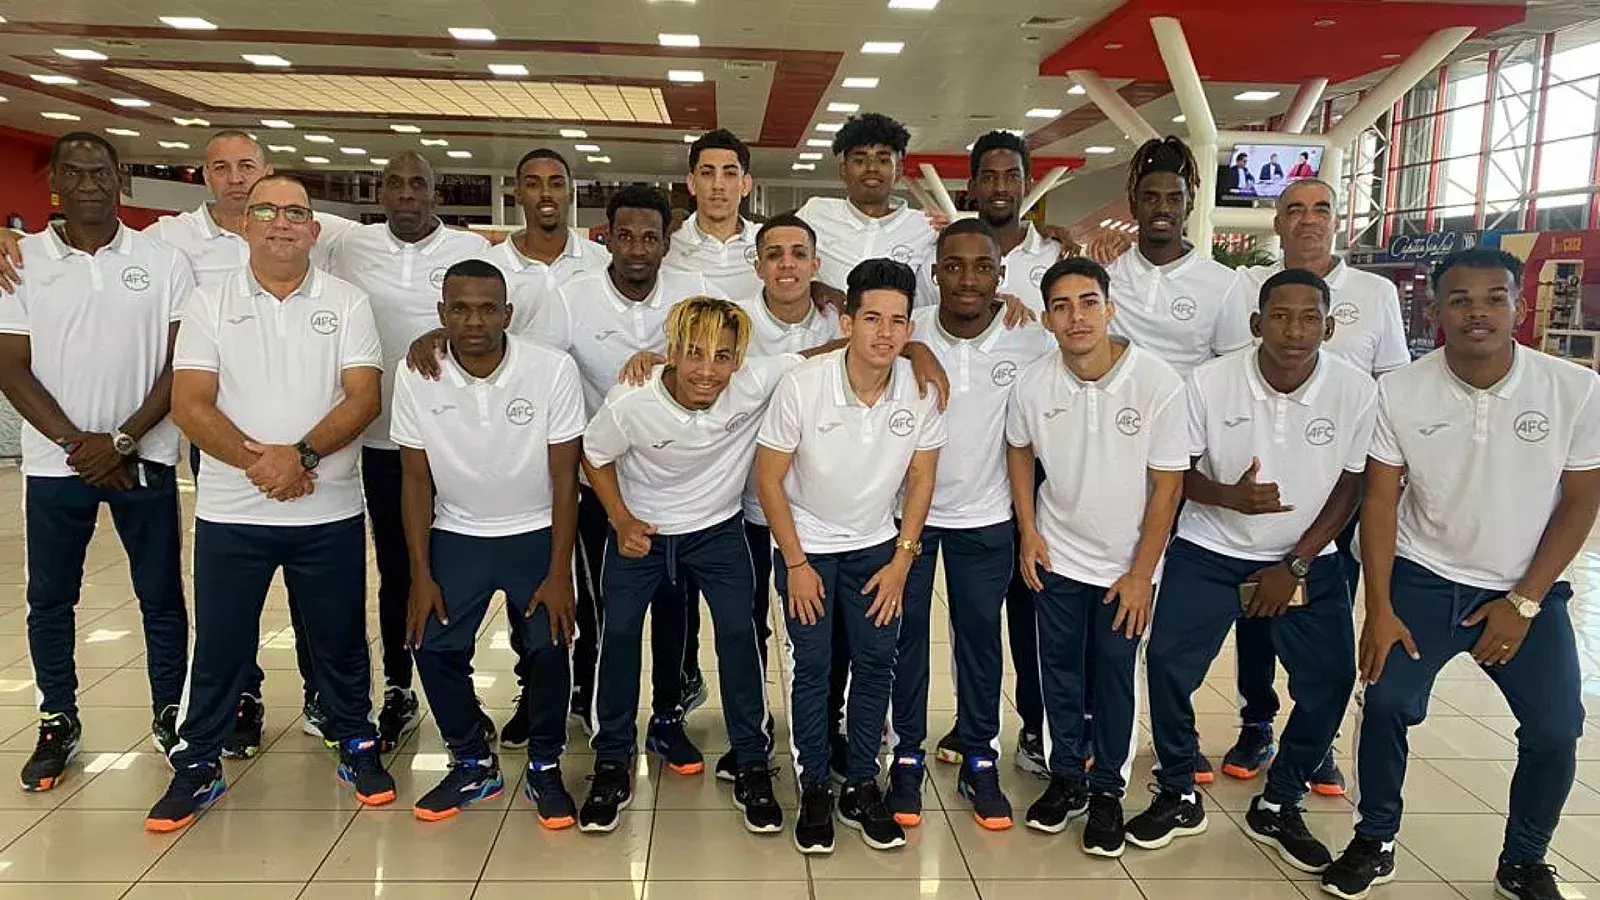 Equipo de futsal antes de salir de Cuba a Costa Rica